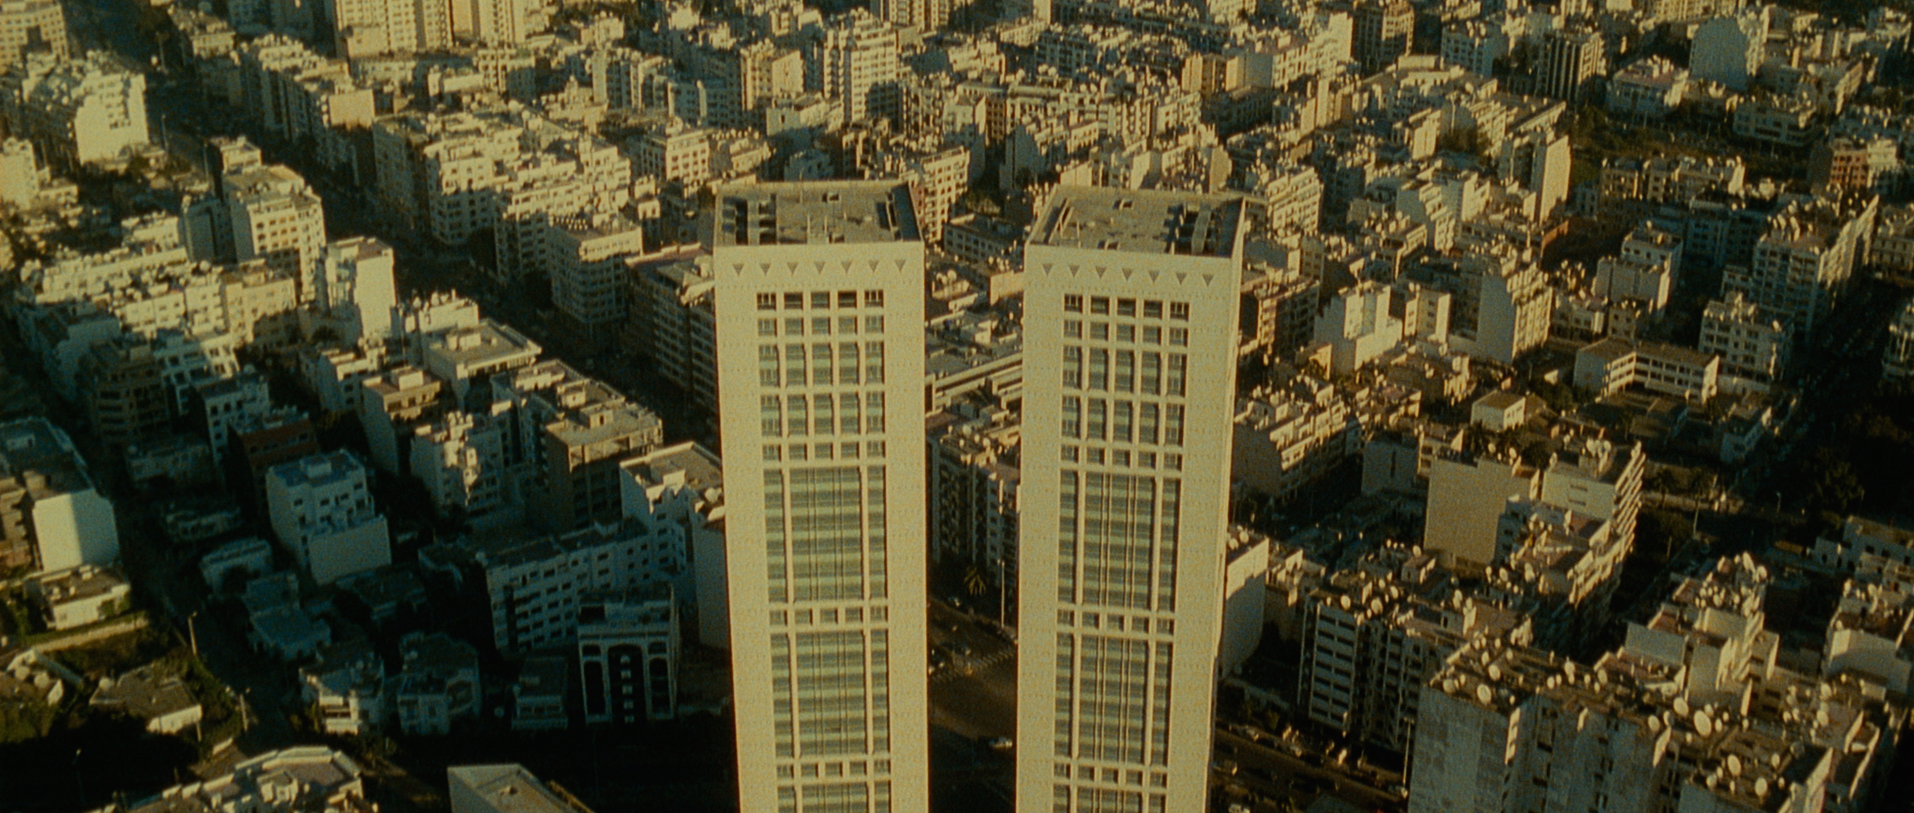 Dans Ali Zaoua, prince de la rue, lorsque Nabil Ayouch survole les tours du Twin Center, vues comme les poumons de Casablanca, se fait entendre la voix chantante du petit Boubker, qui apparaît alors comme le cœur de la ville (Ali n' Productions/Alexis Films)